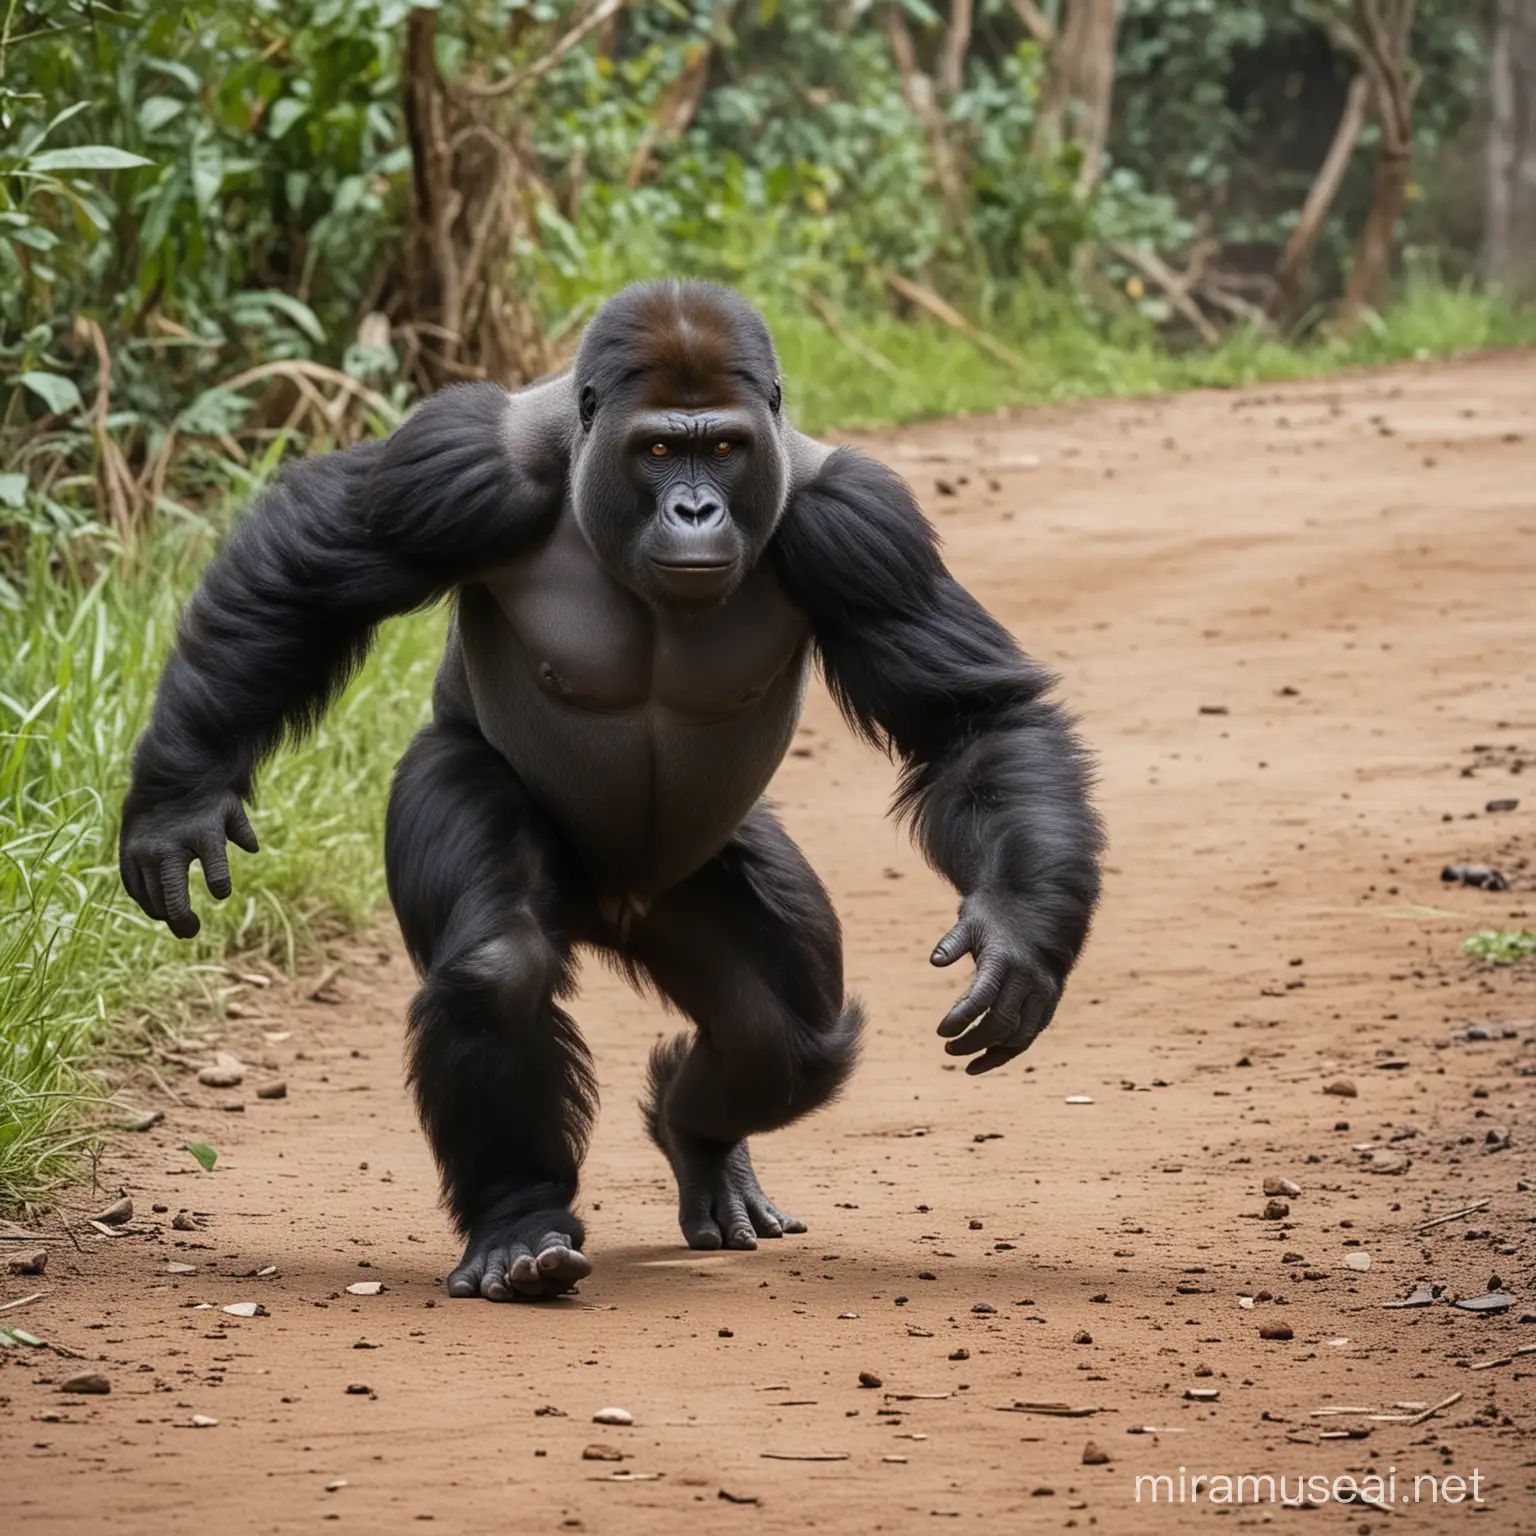 gorilla monkey running away on 4 feet
